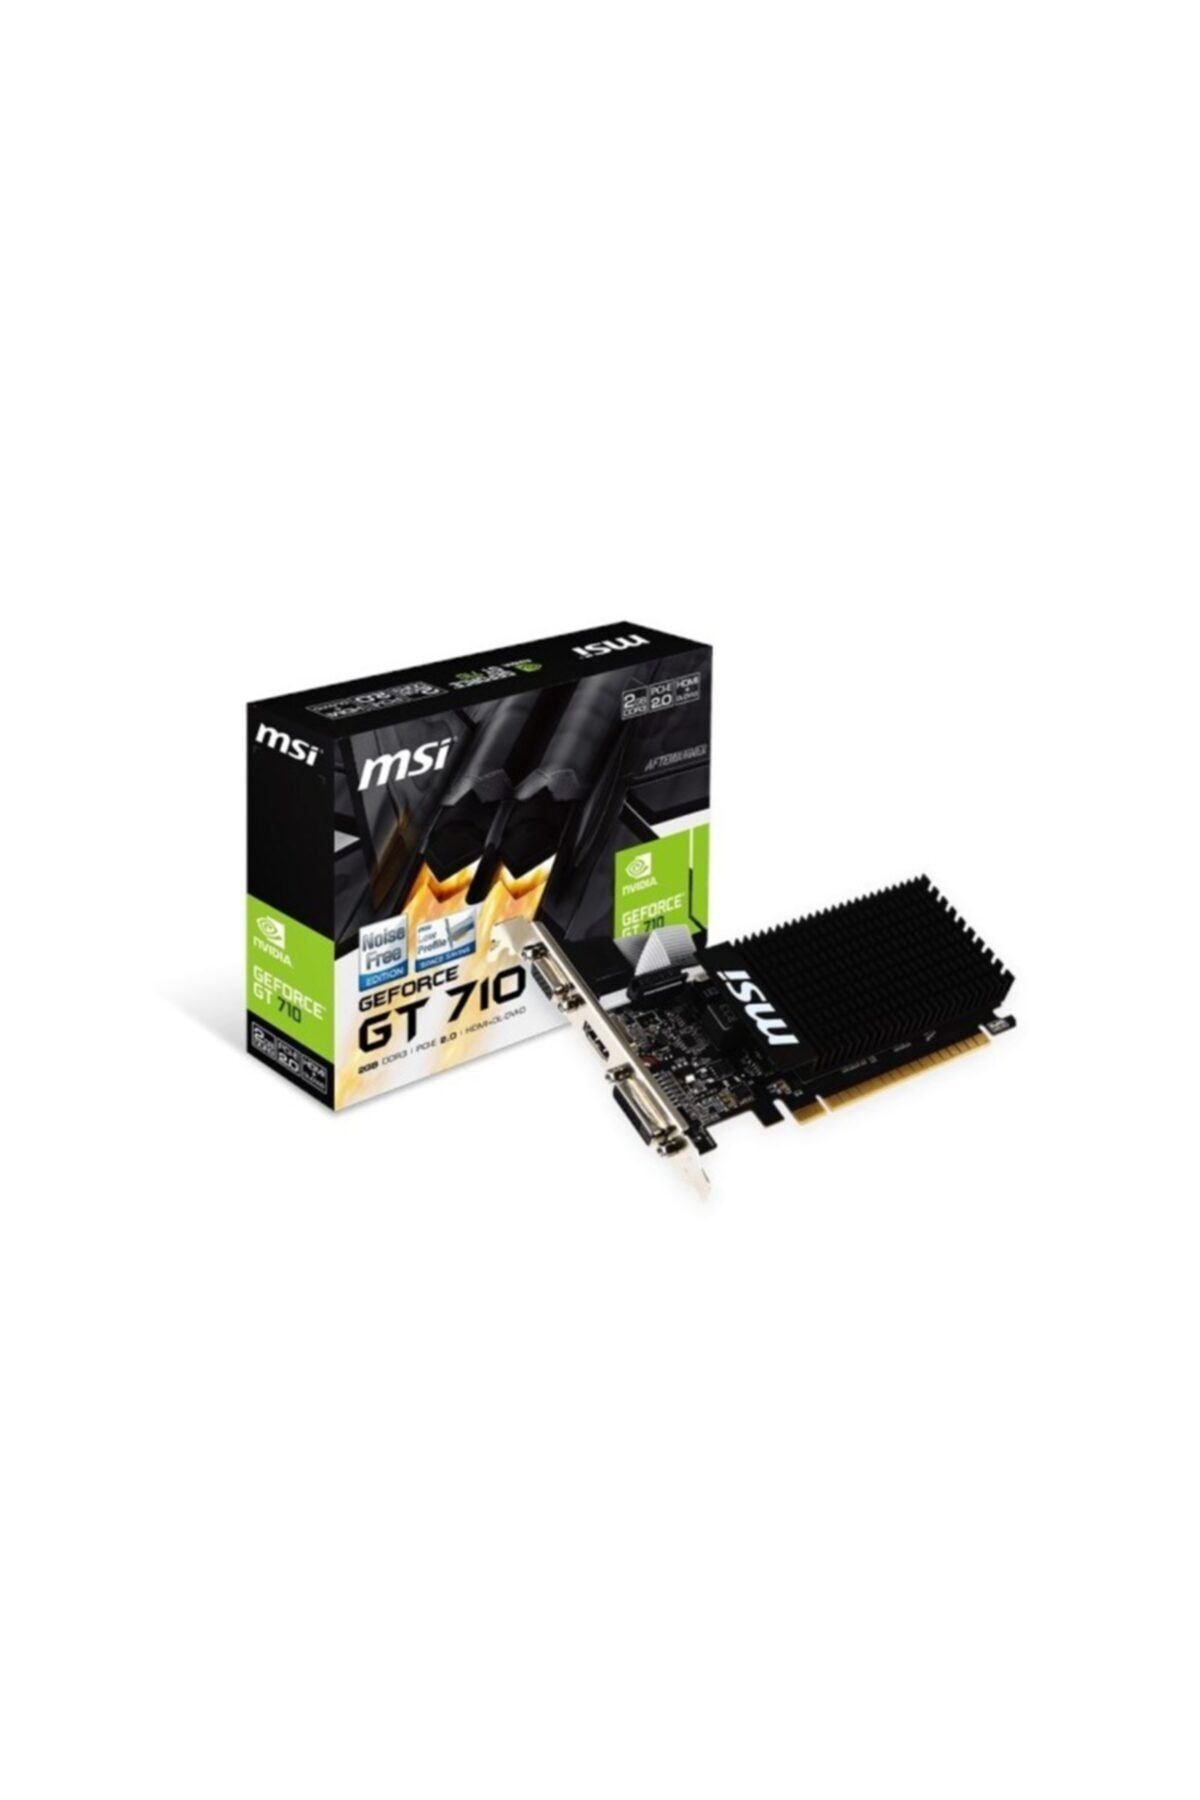 MSI Geforce Gt 710 2gb 2gd3h Gddr3 64bit Lp